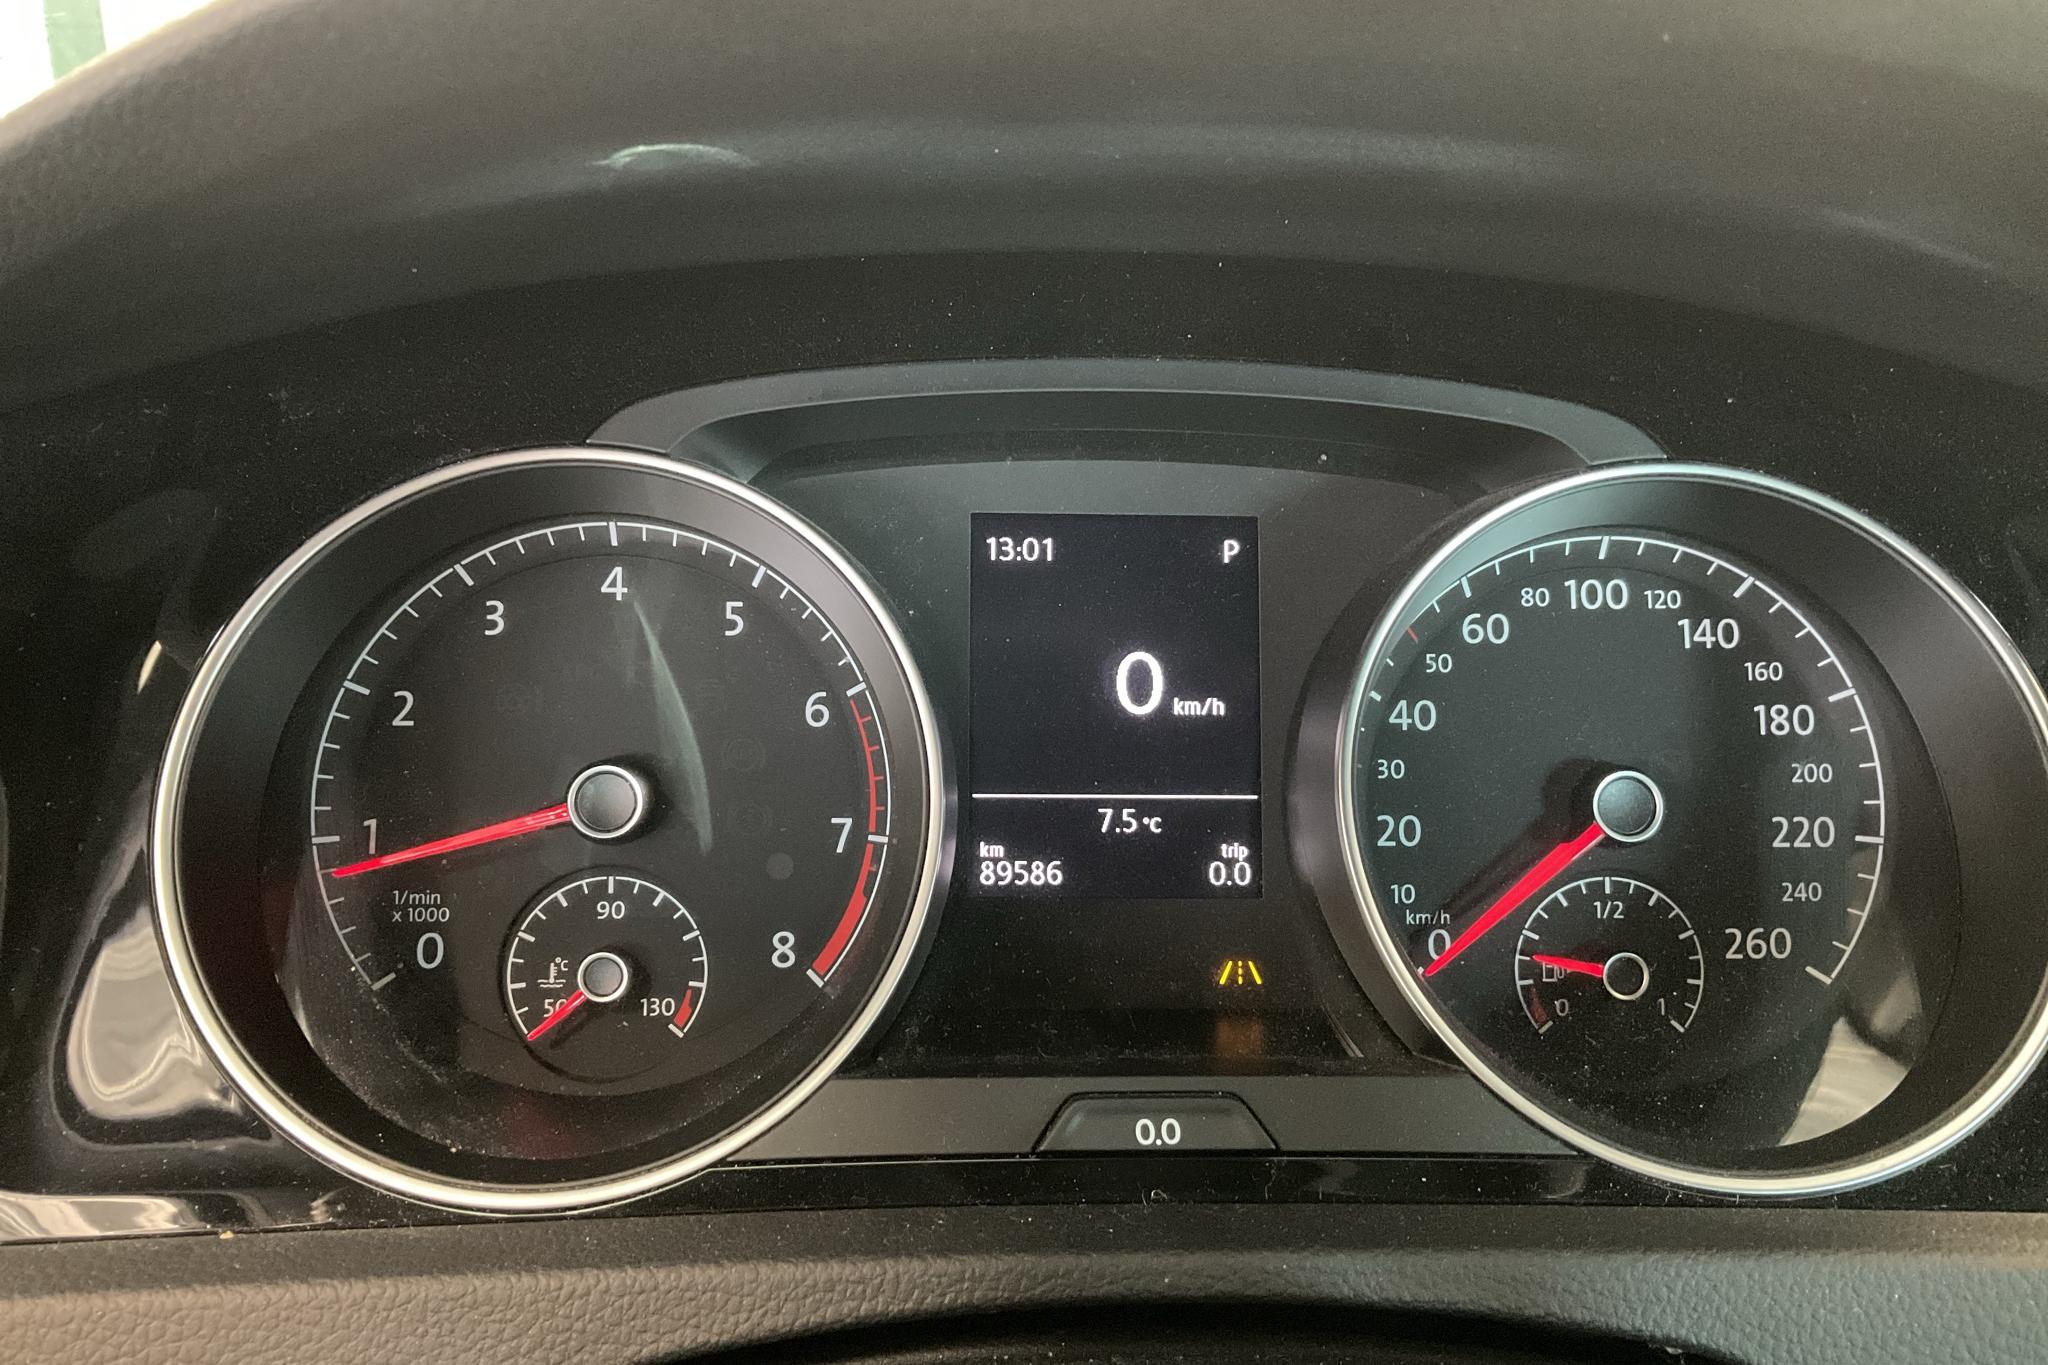 VW Golf VII 1.5 TSI Sportscombi (150hk) - 8 959 mil - Automat - Dark Blue - 2019